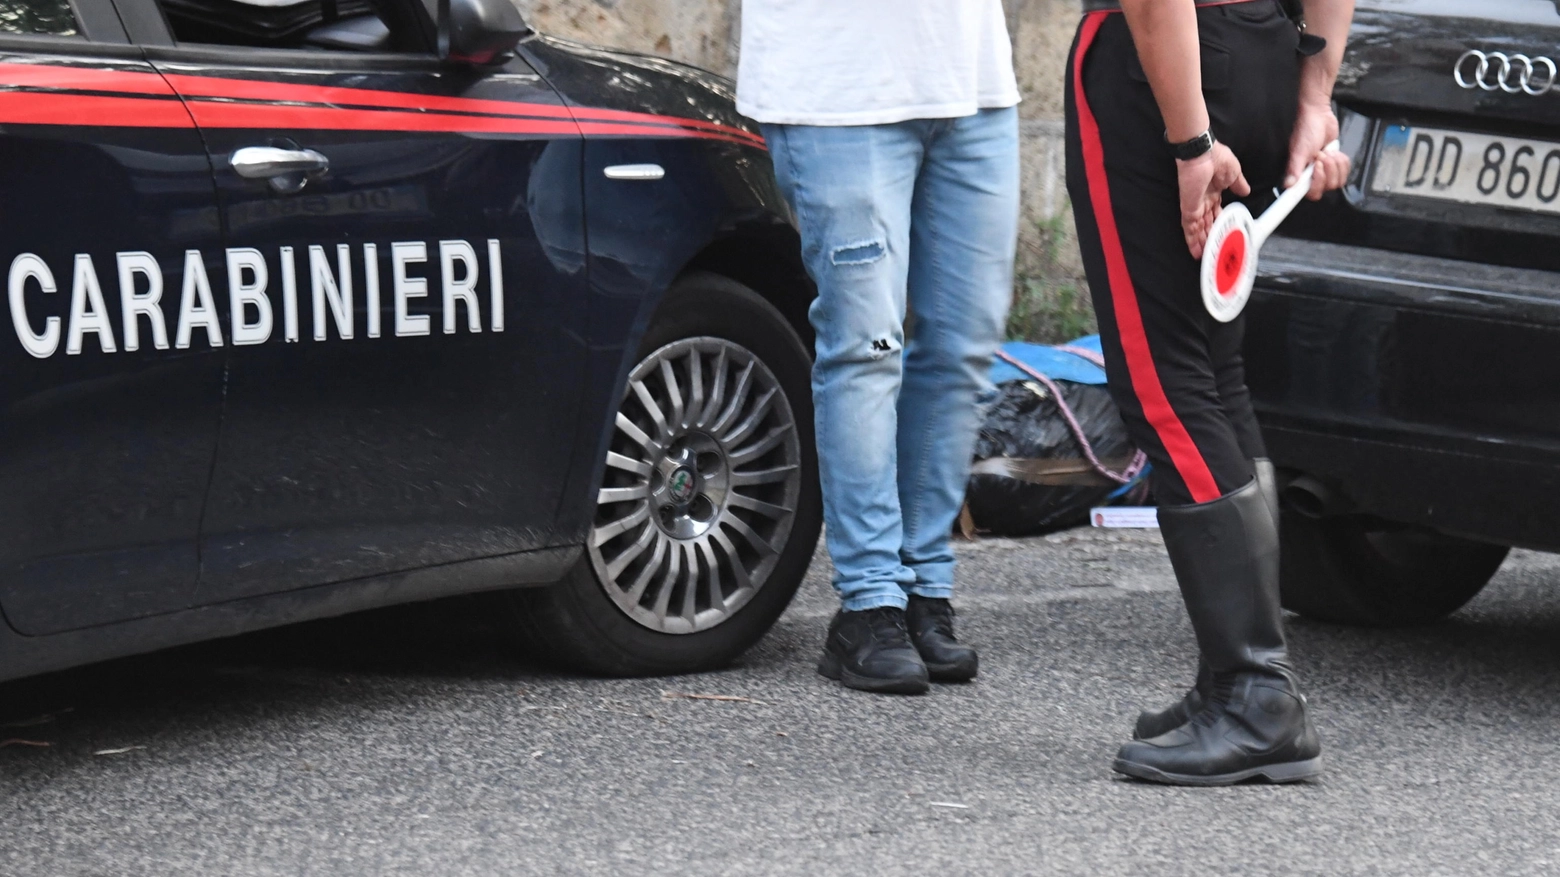 Carabinieri (Immagine di repertorio)